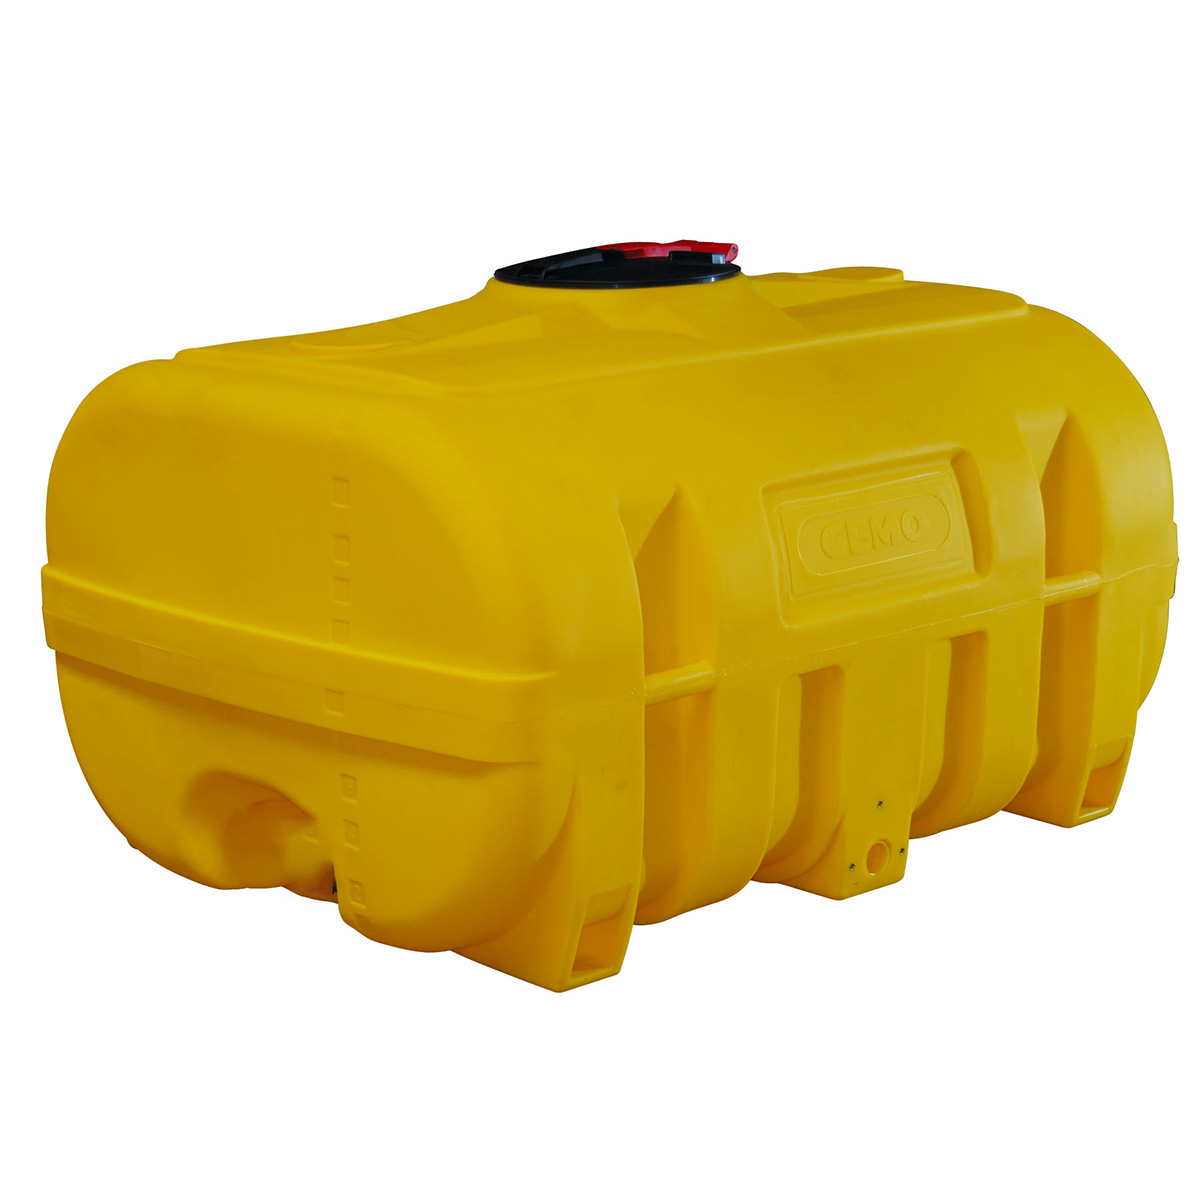 Transportfass mit Schwallwand, aus PE, gelb eingefärbt, kofferförmig